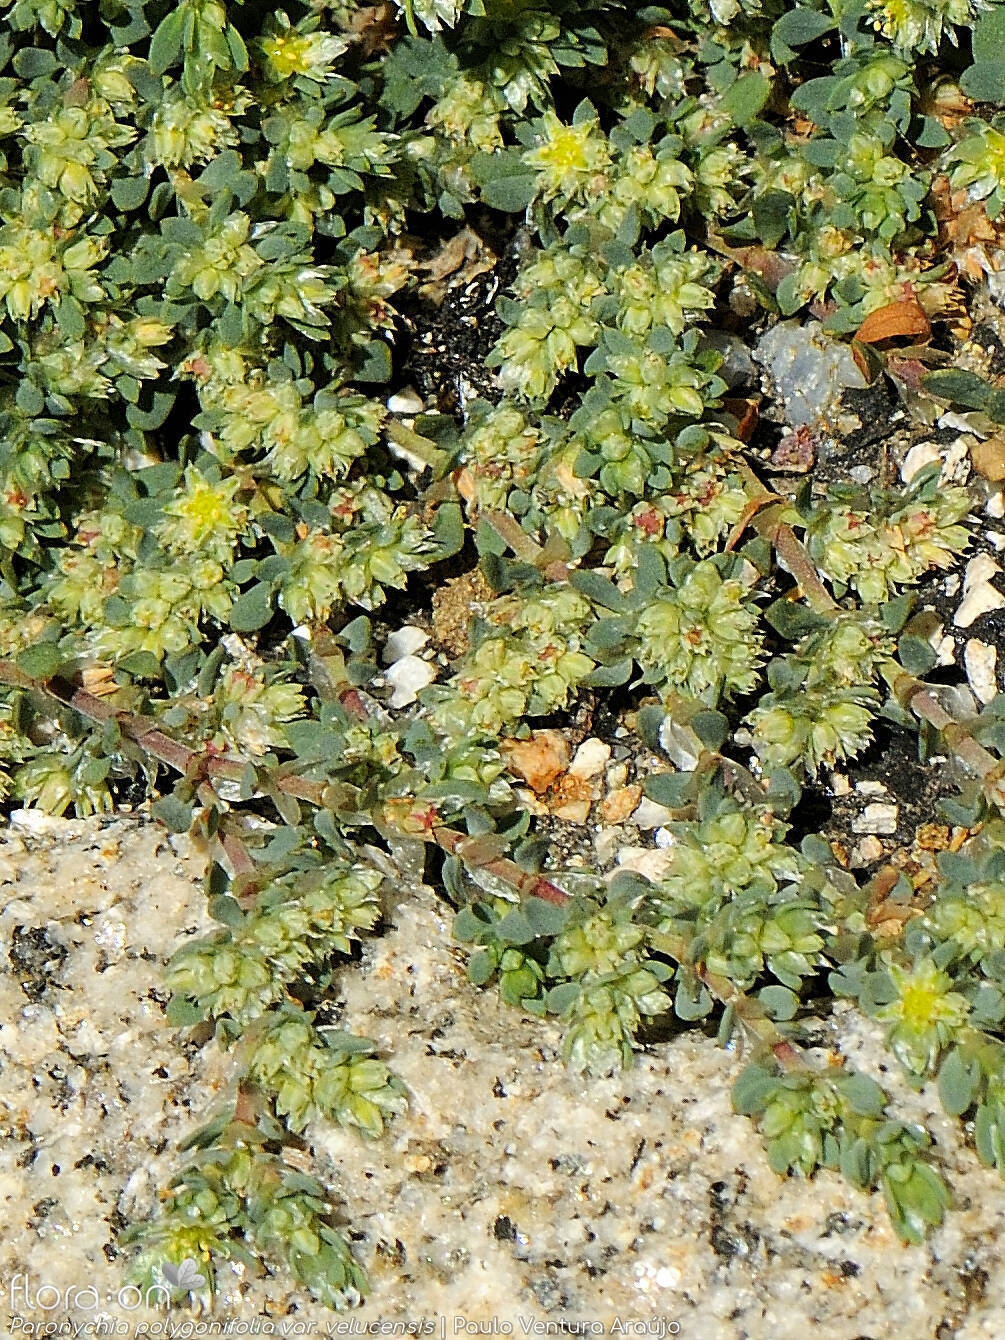 Paronychia polygonifolia velucensis - Hábito | Paulo Ventura Araújo; CC BY-NC 4.0